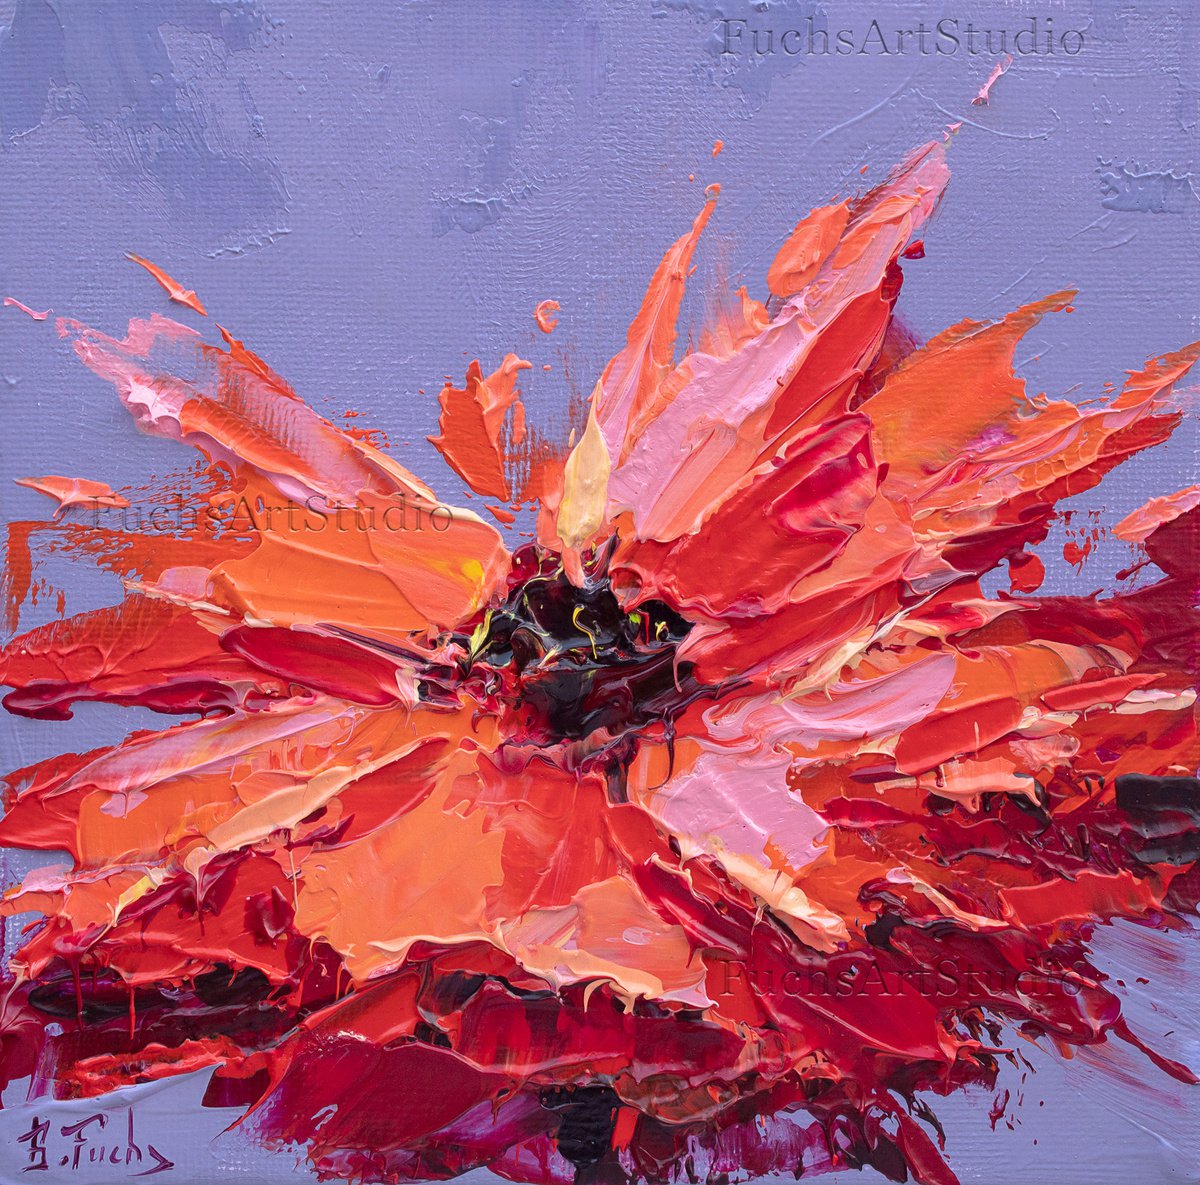 Red Poppy painting by Bozhena Fuchs